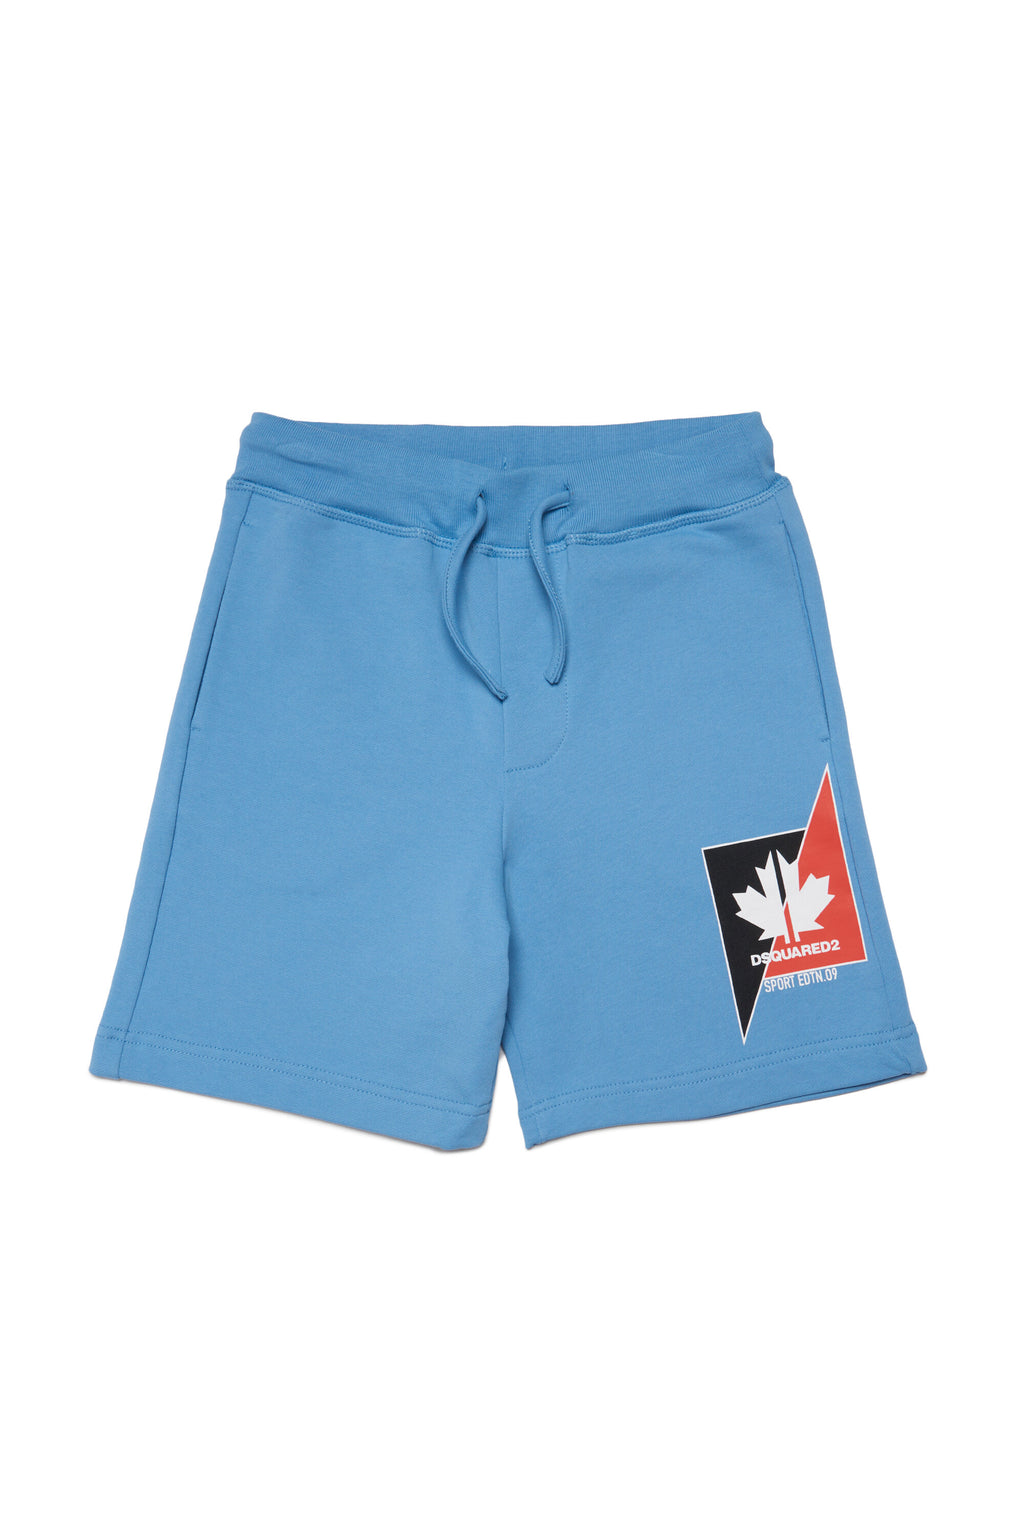 Pantalones cortos en chándal con gráficos Leaf en dos tonos